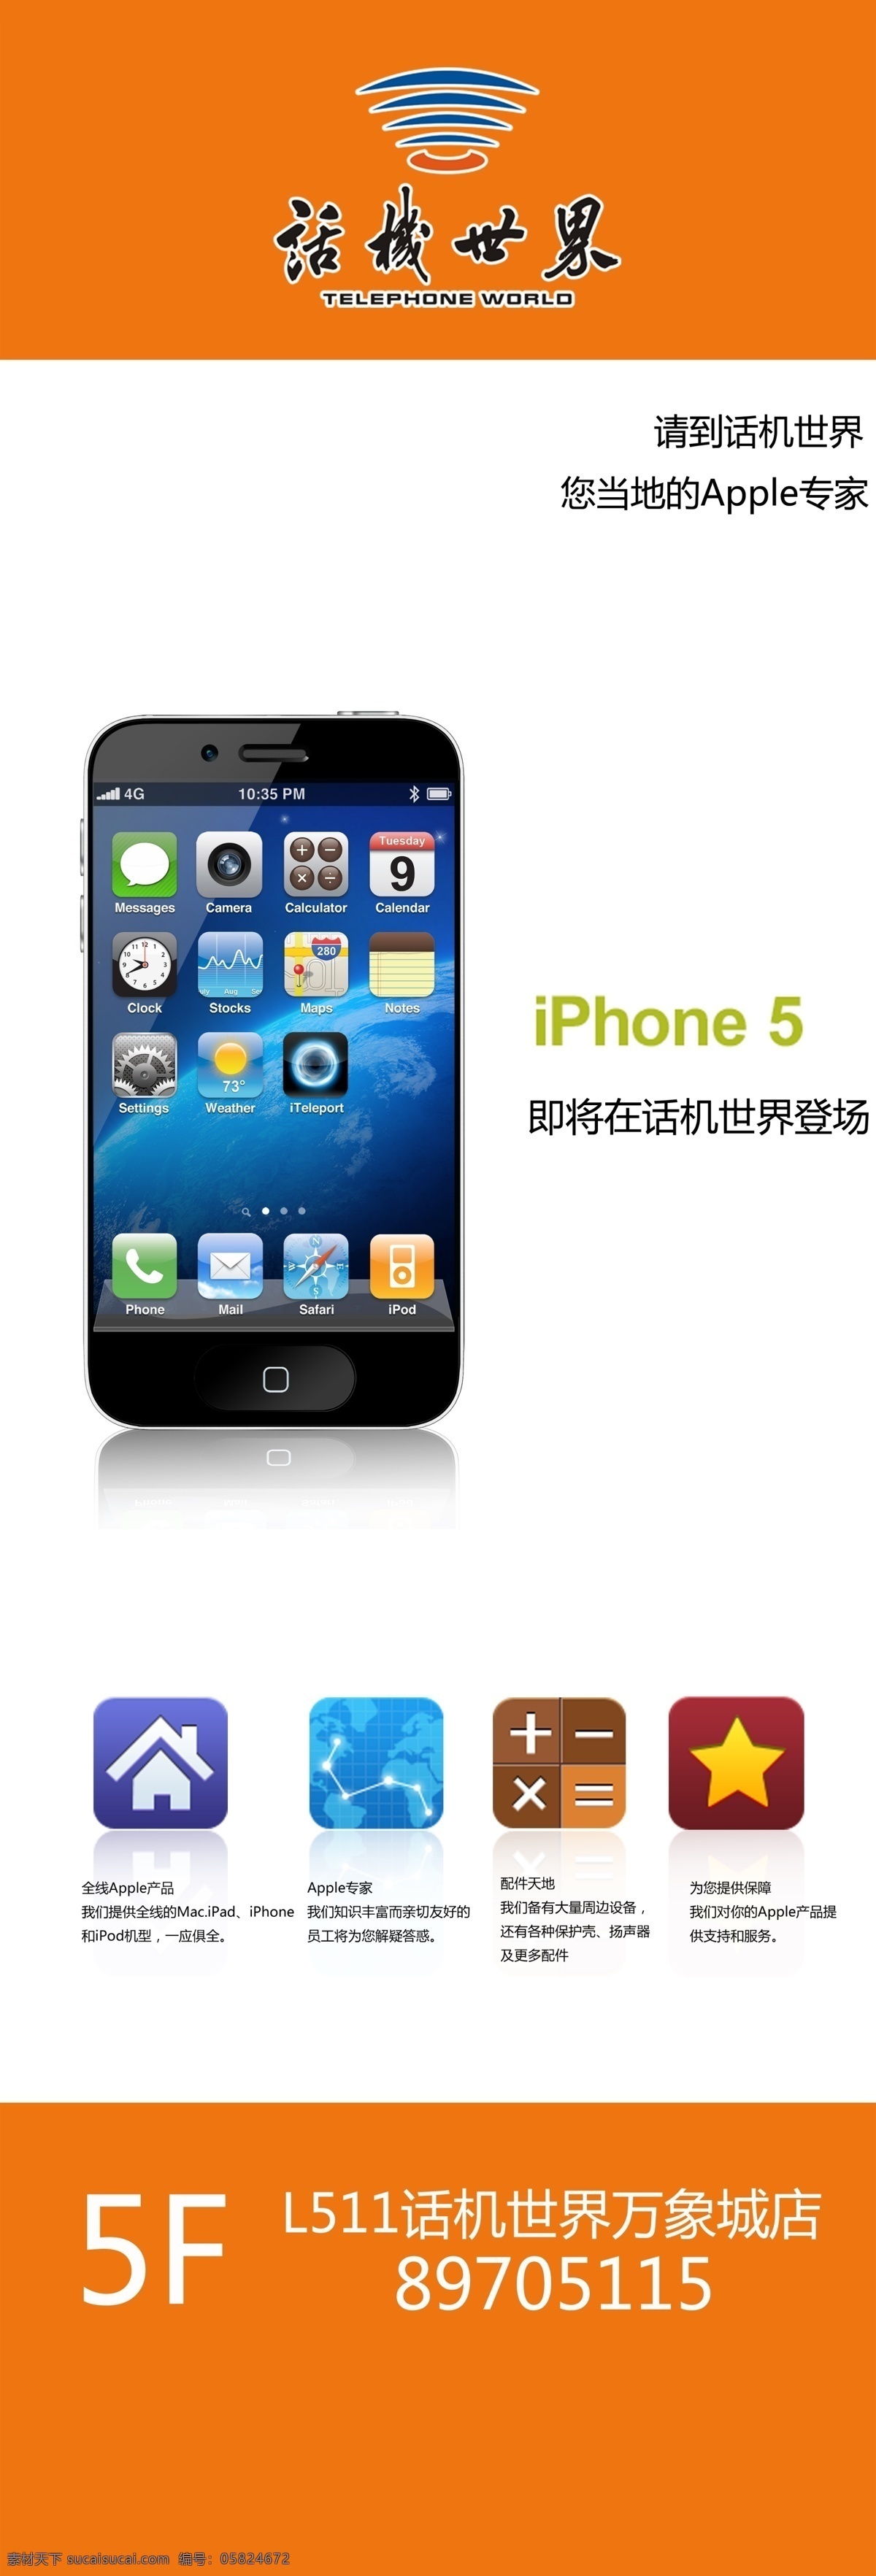 手机高清图 iphone5 矢量图 现代科技